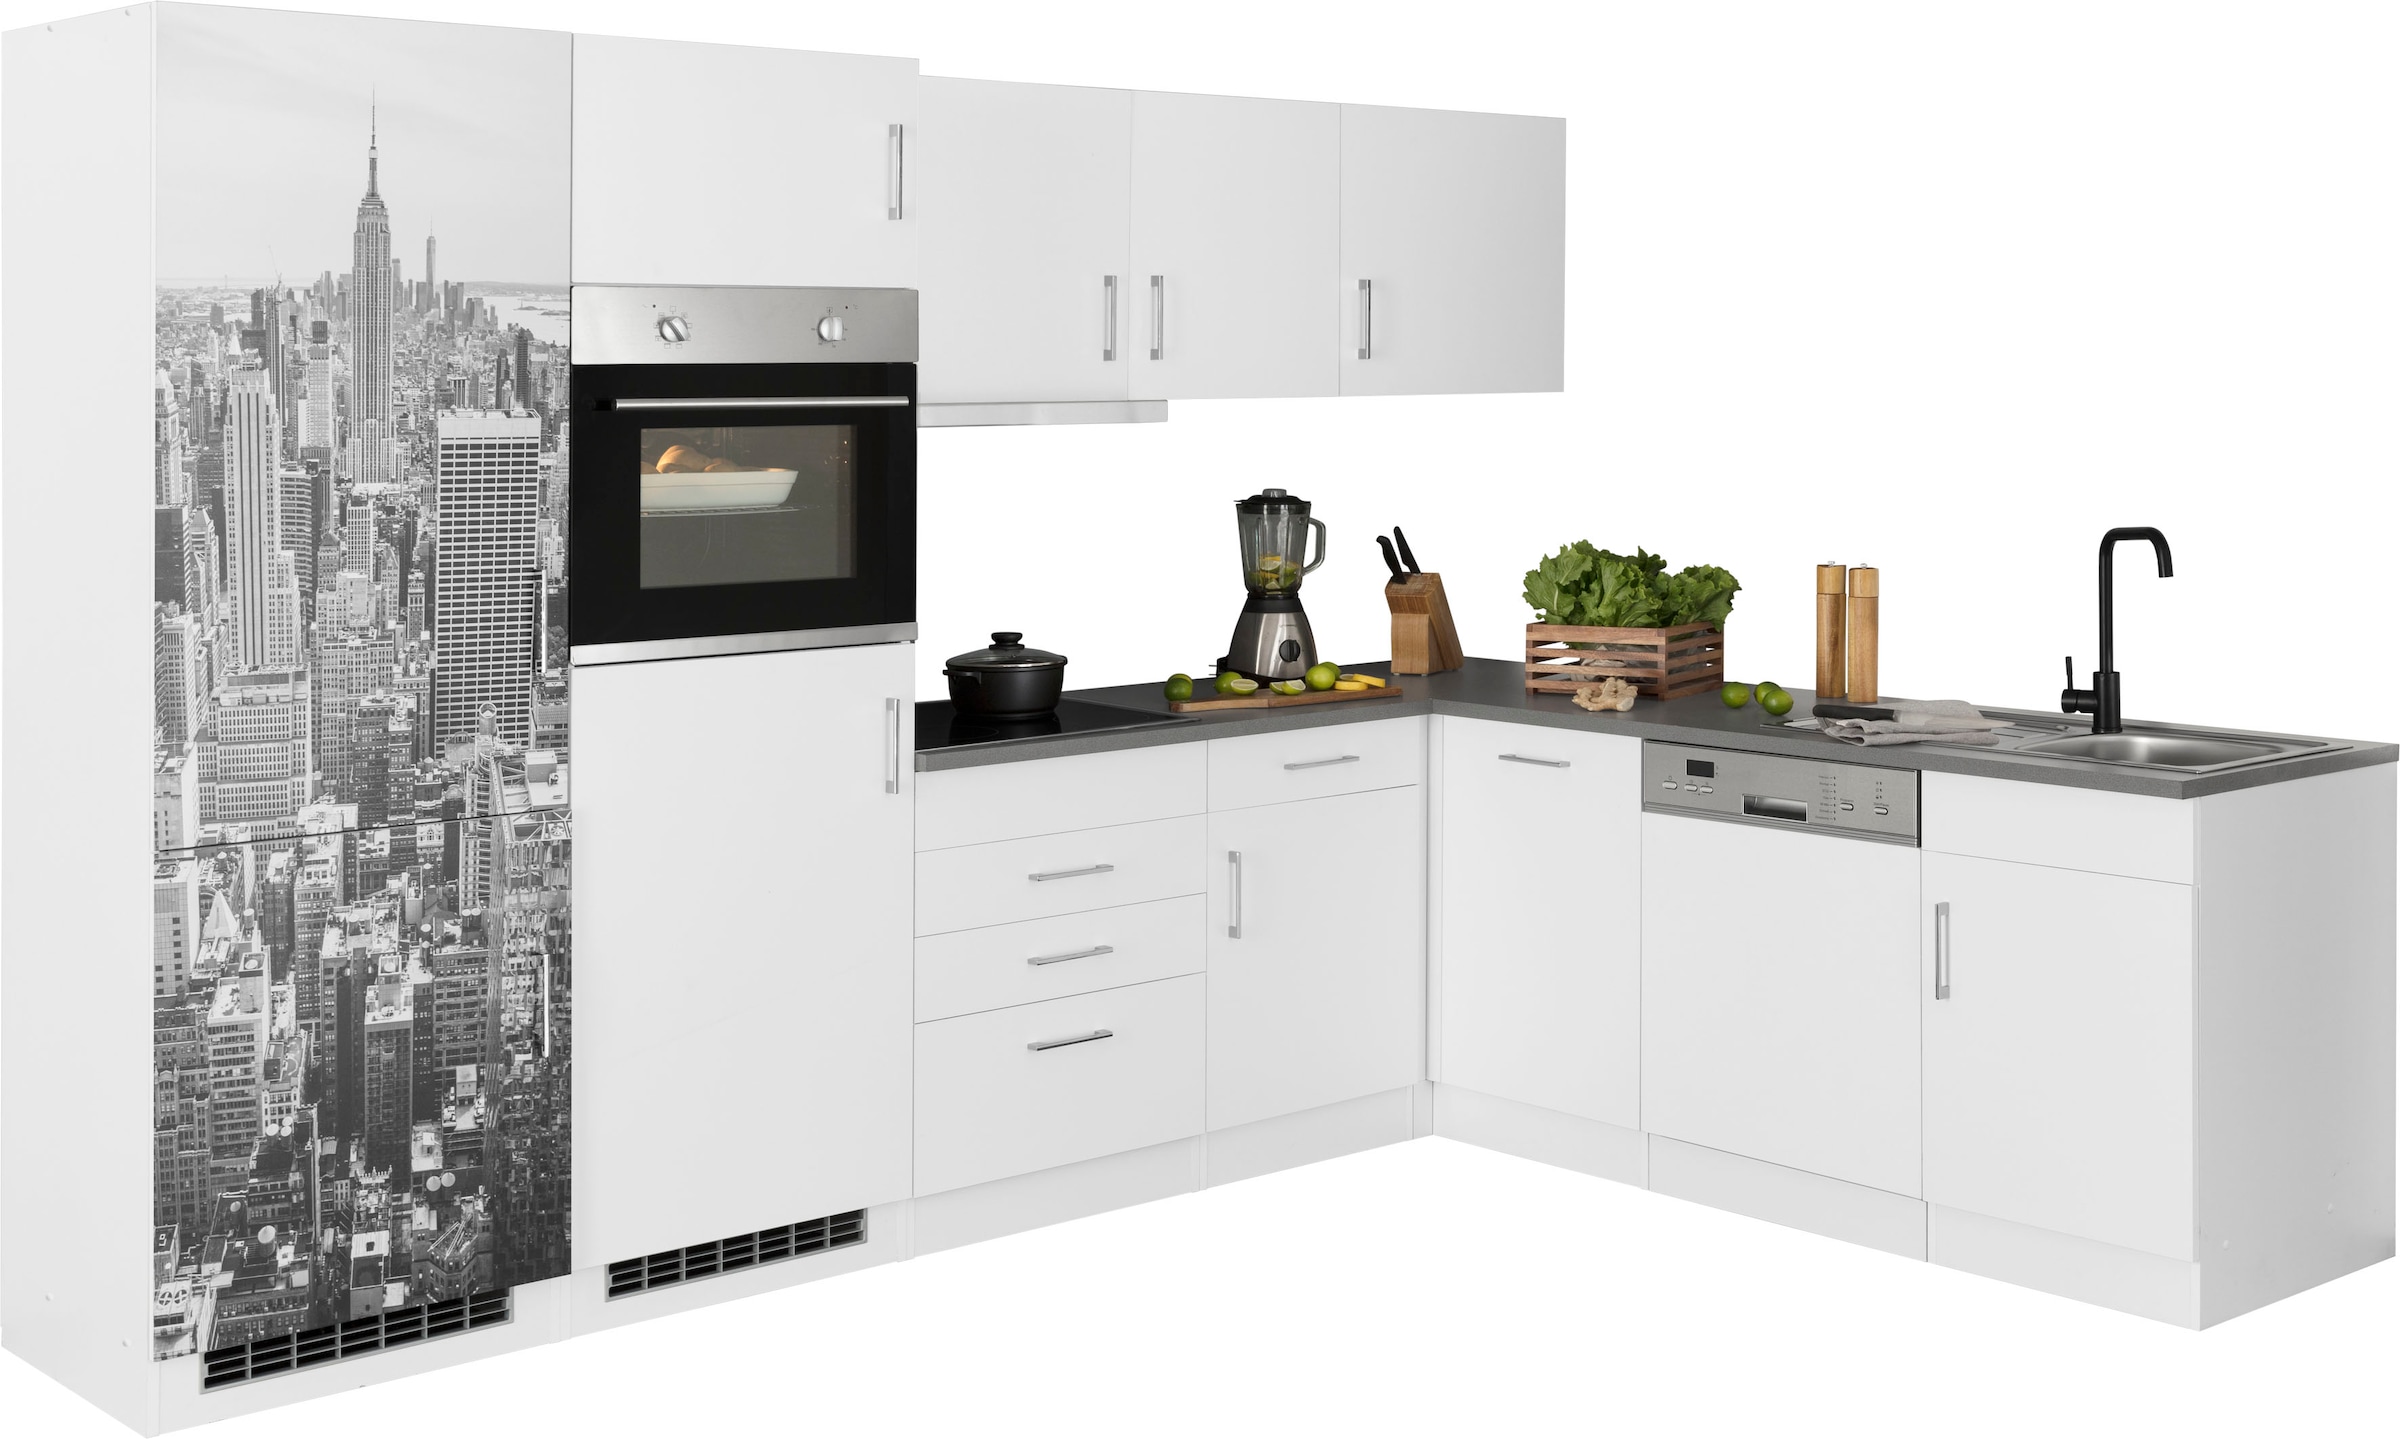 RESPEKTA Winkelküche »Safado aus der Serie Marleen«, Breite 340 cm, mit Soft -Close kaufen online bei OTTO | L-Küchen